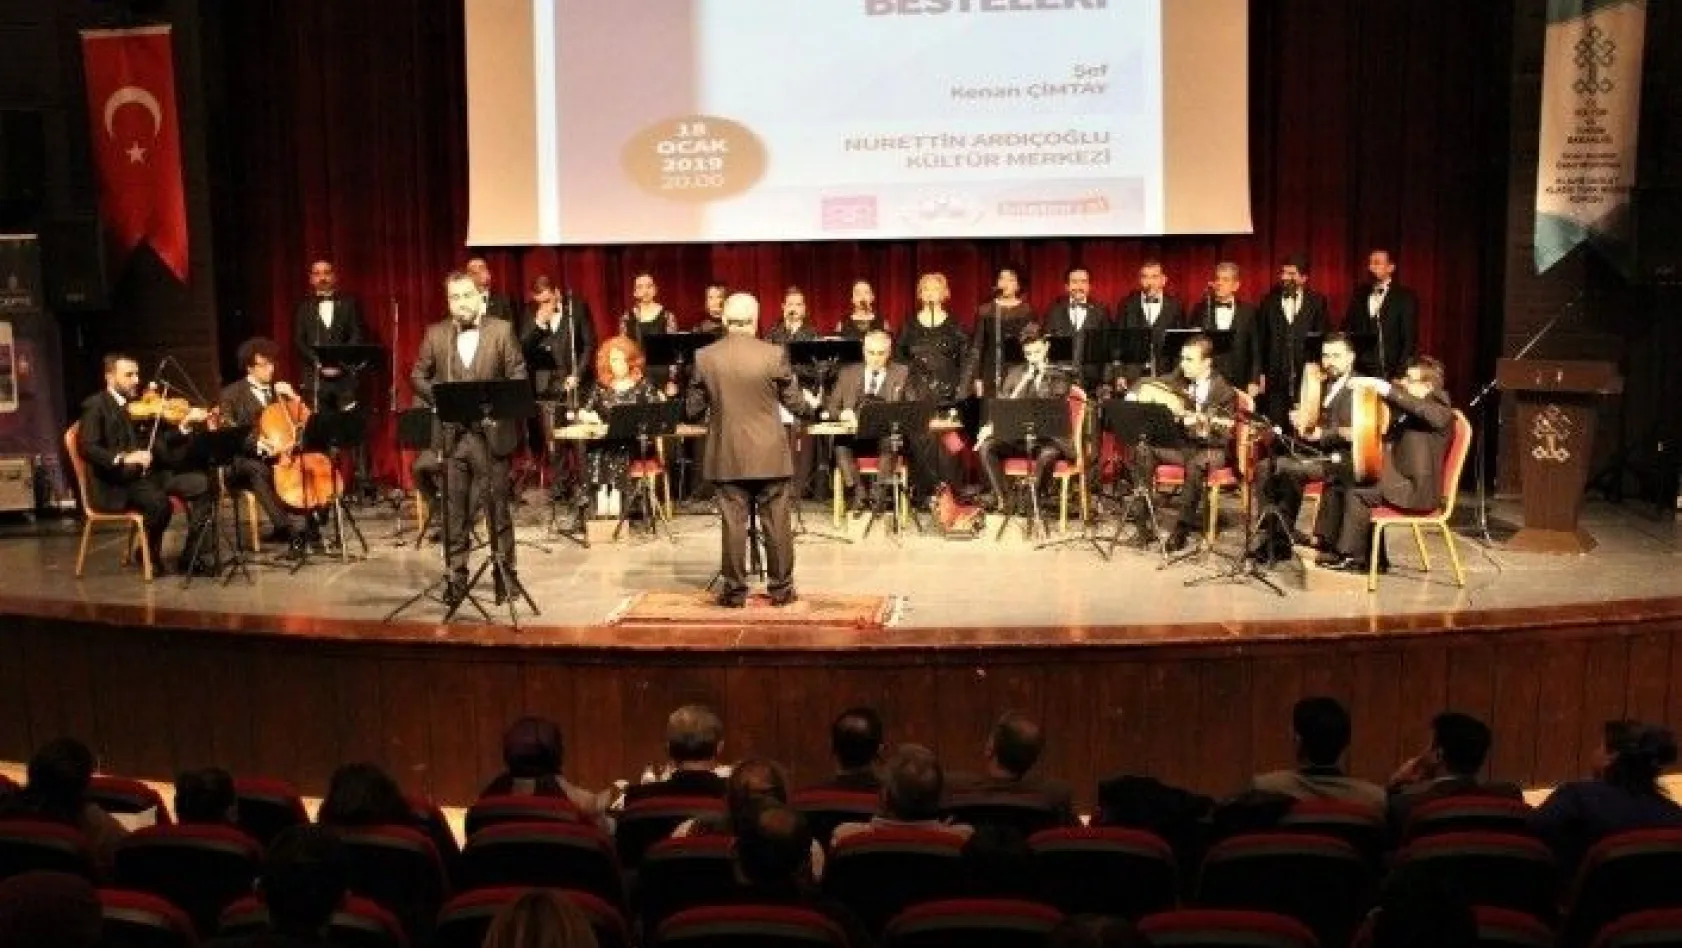 Elazığ'da Devlet Klasik Türk Müziği Korosu 2019'un ilk konserini verdi